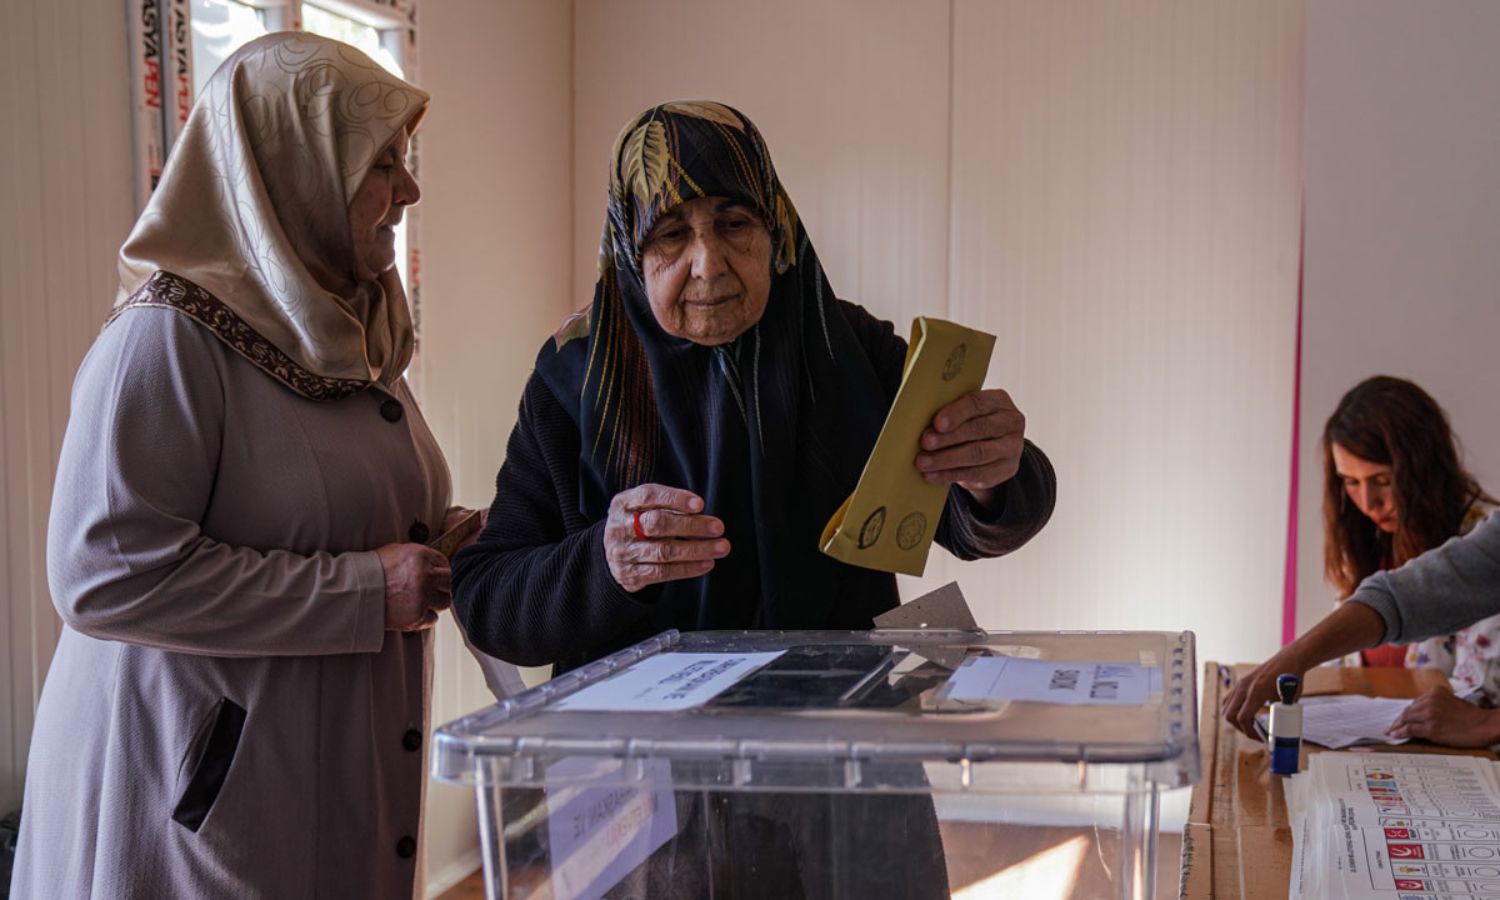 camera iconناخبة تدلي بصوتها في الانتخابات الرئاسية والبرلمانية في تركيا ضمن المناطق التي ضربها الزلزال - 14 من أيار 2023 (hurriyet)